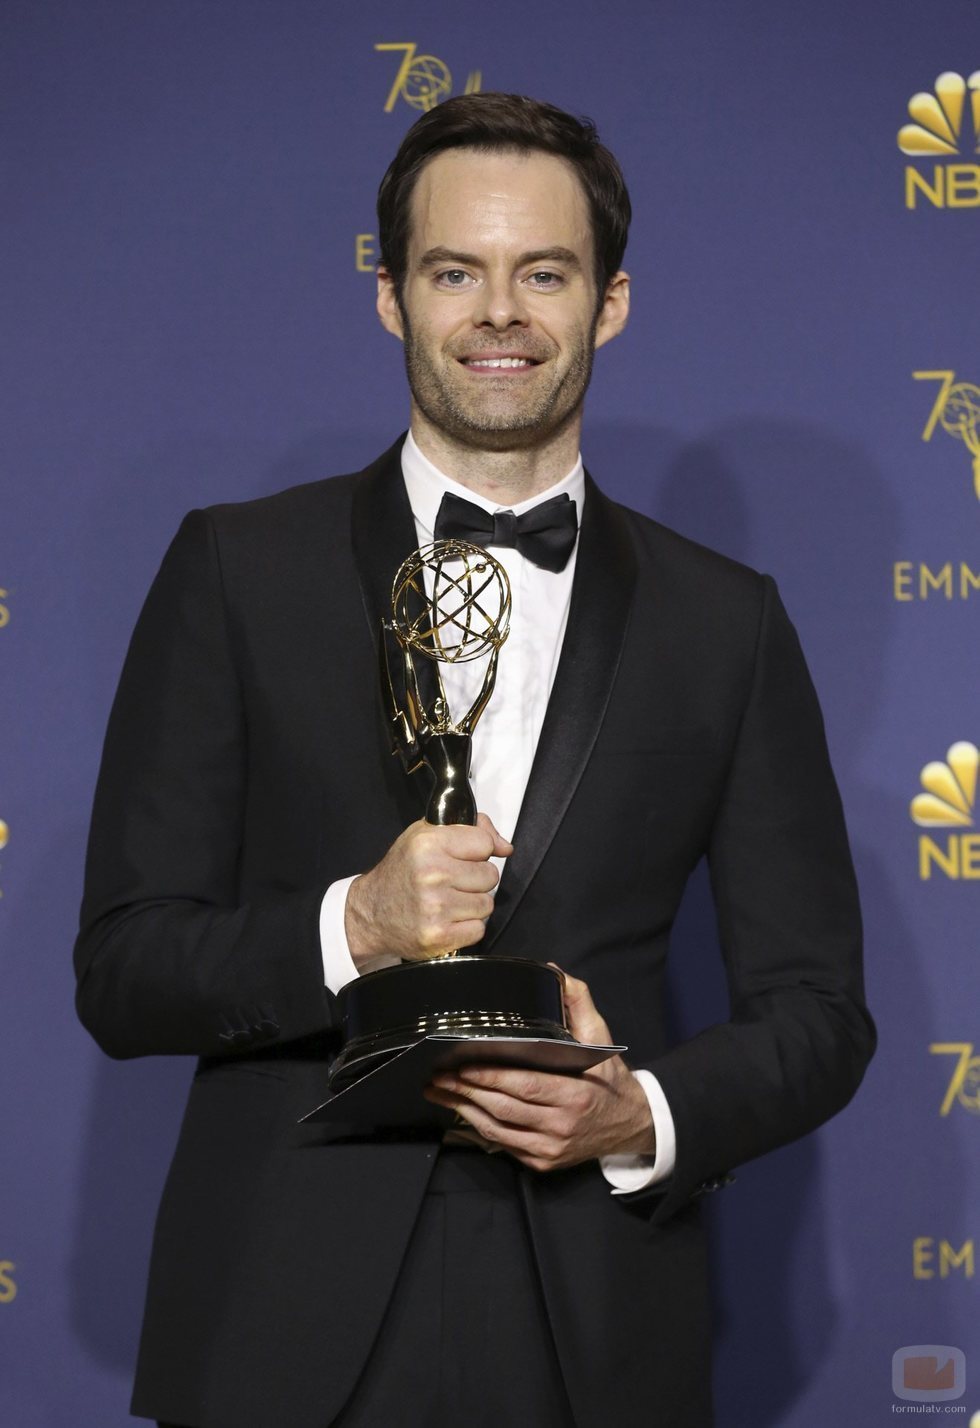 Bill Hader, ganador del Emmy 2018 como mejor actor protagonista en comedia